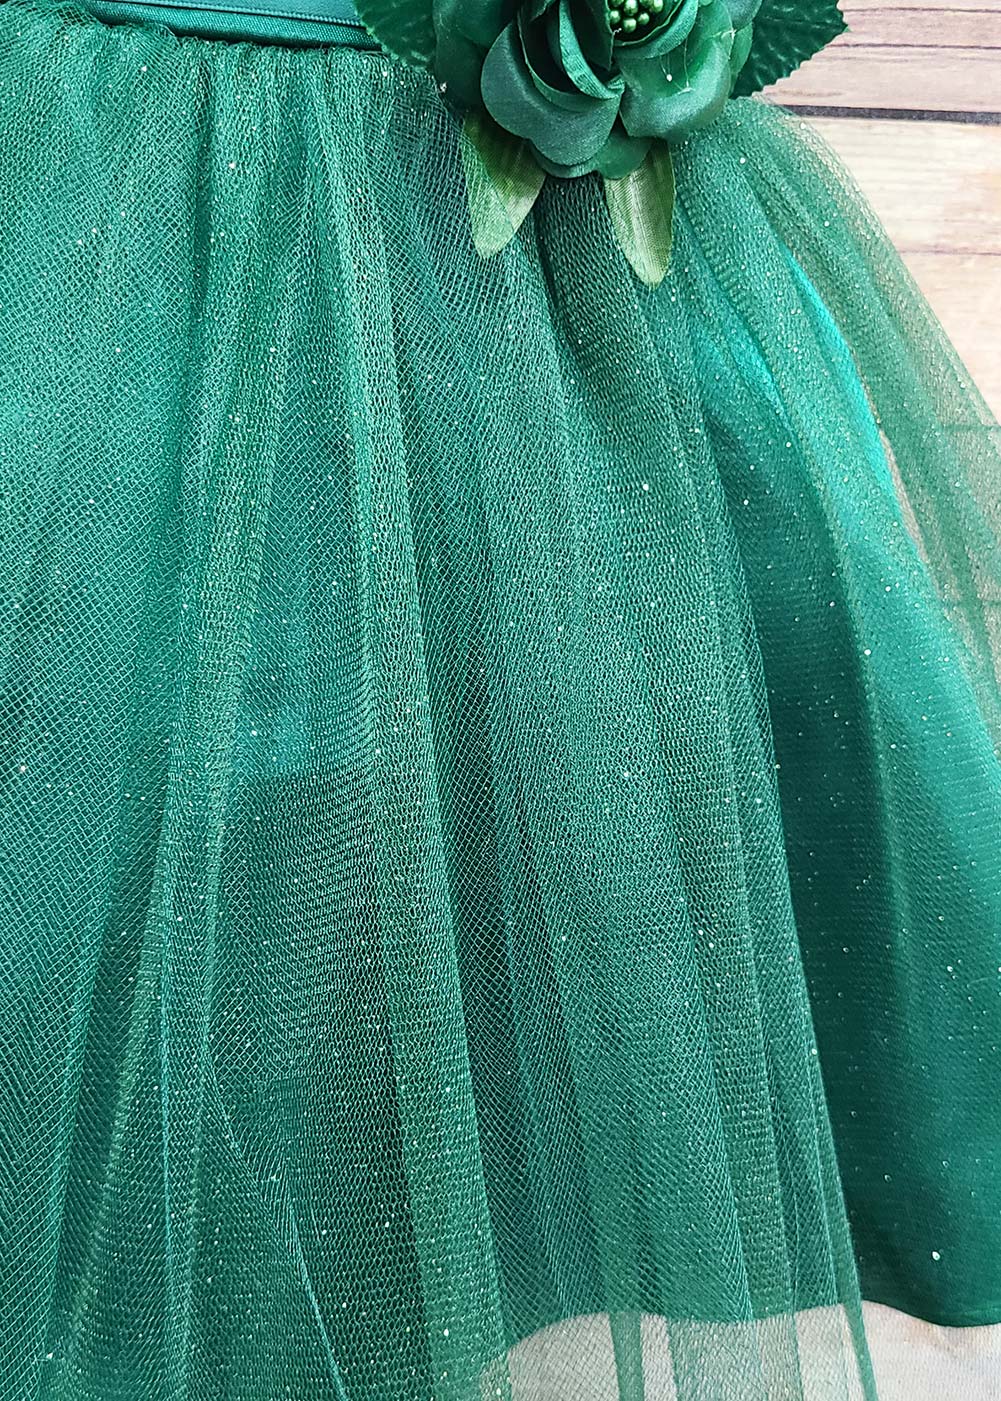 communion dresses Alice dress green PETITE ADELE flower girl dresses